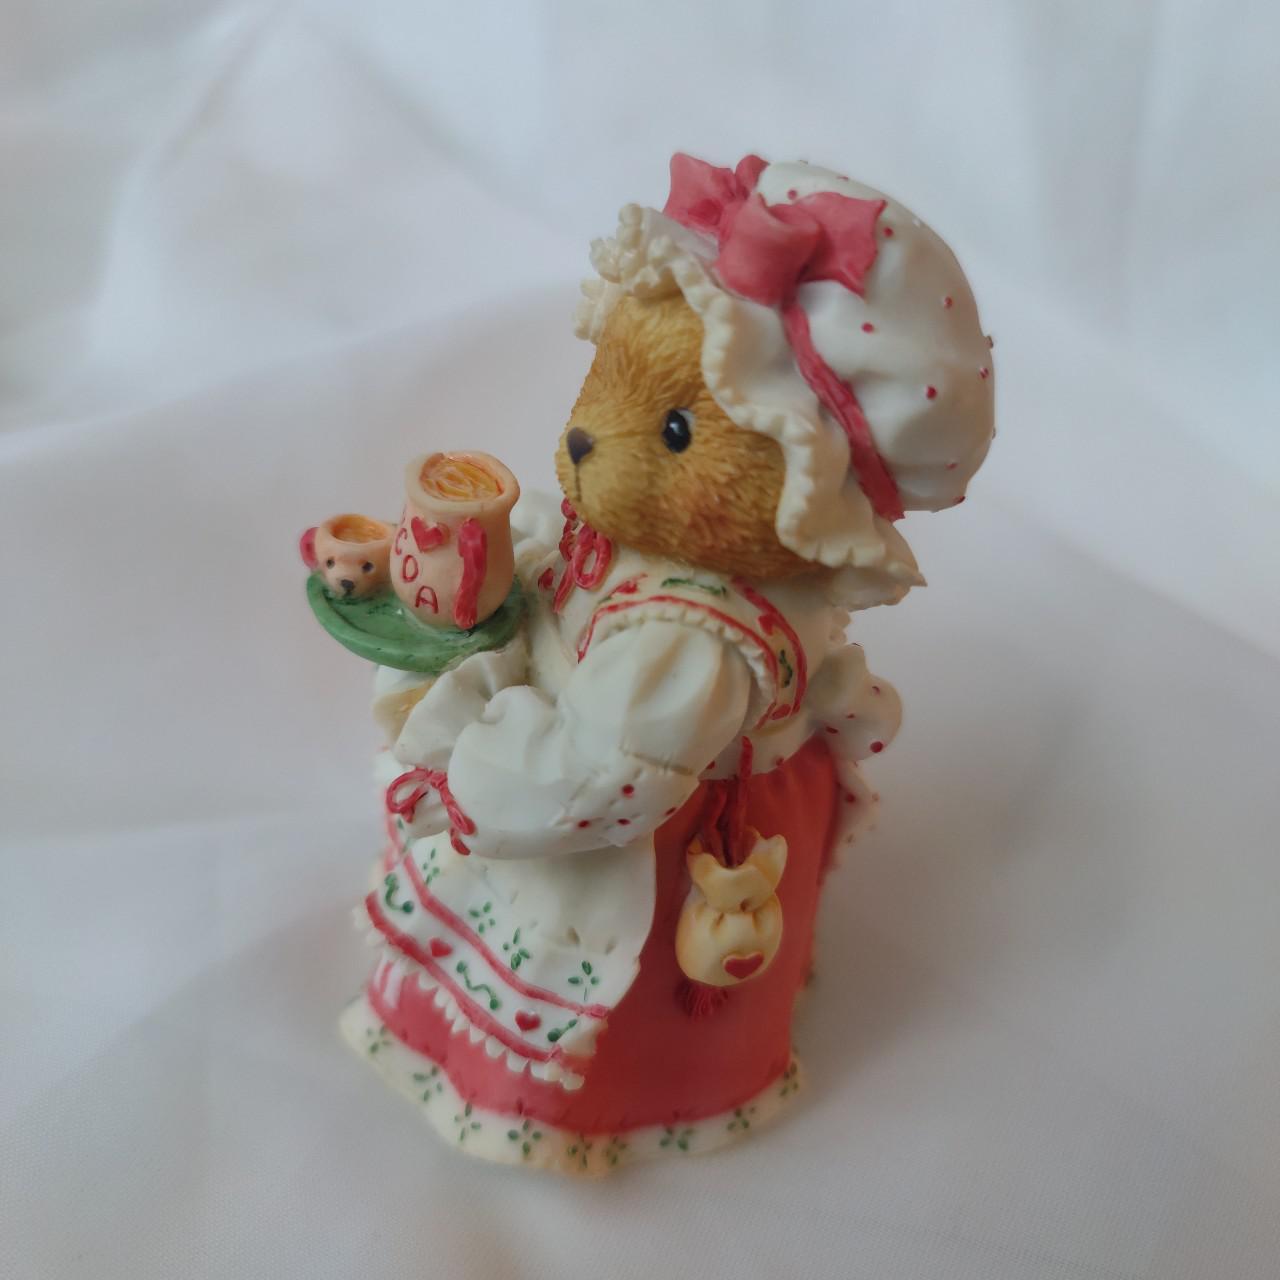 Product Image 2 - Vintage 1995 Cherished Teddies figurine: